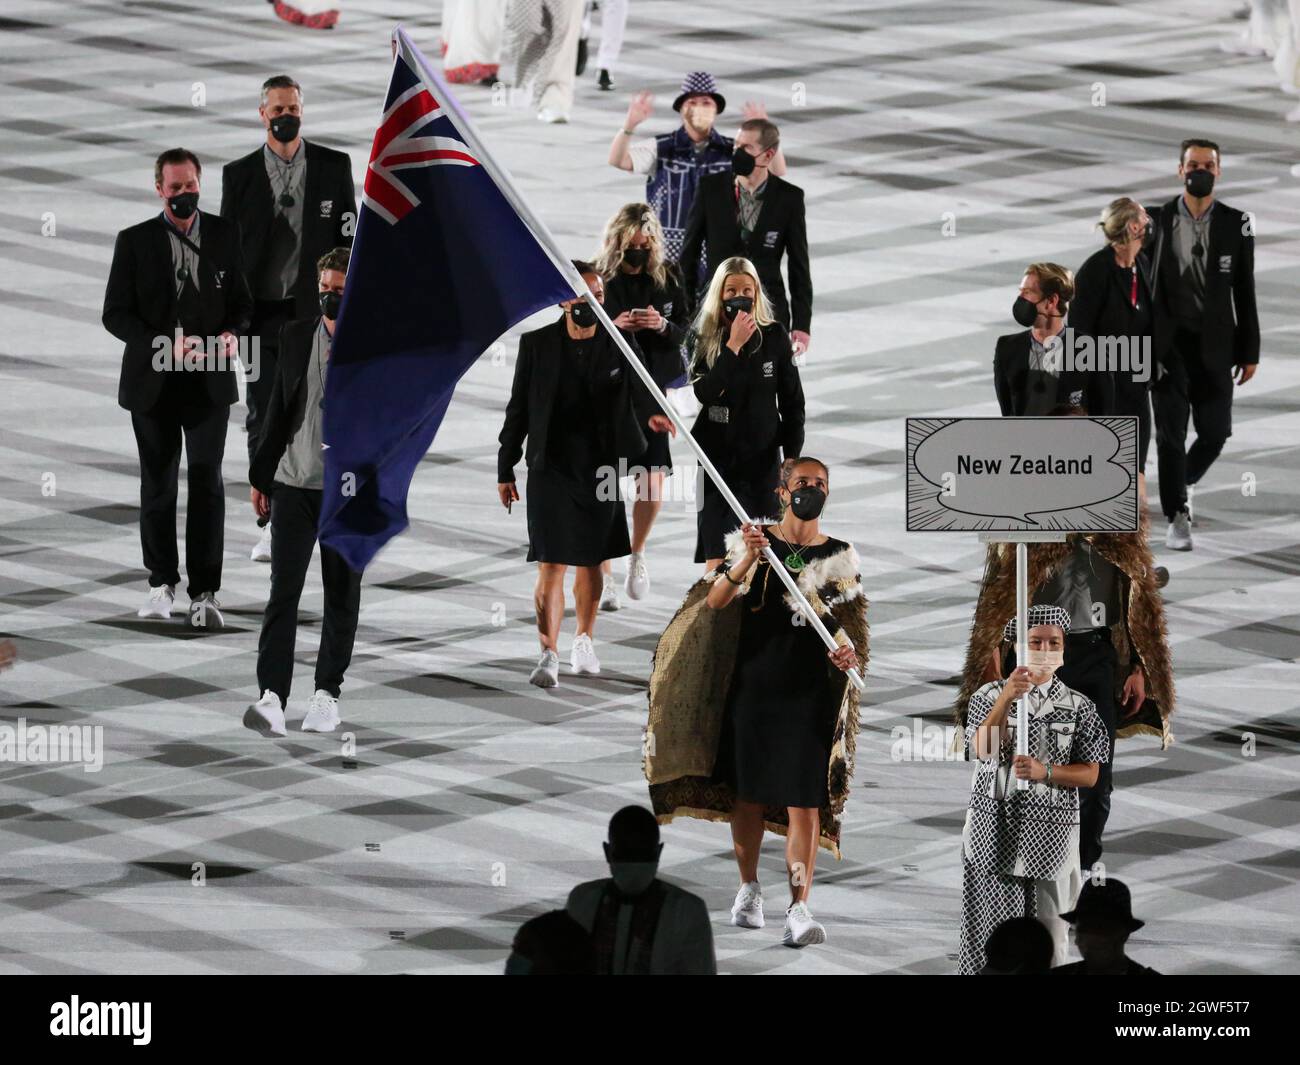 23 JUILLET 2021 - TOKYO, JAPON: Les porteurs de drapeau de la Nouvelle-Zélande Sarah Hirini et David Noika entrent dans le stade olympique avec leur délégation pendant le par Banque D'Images